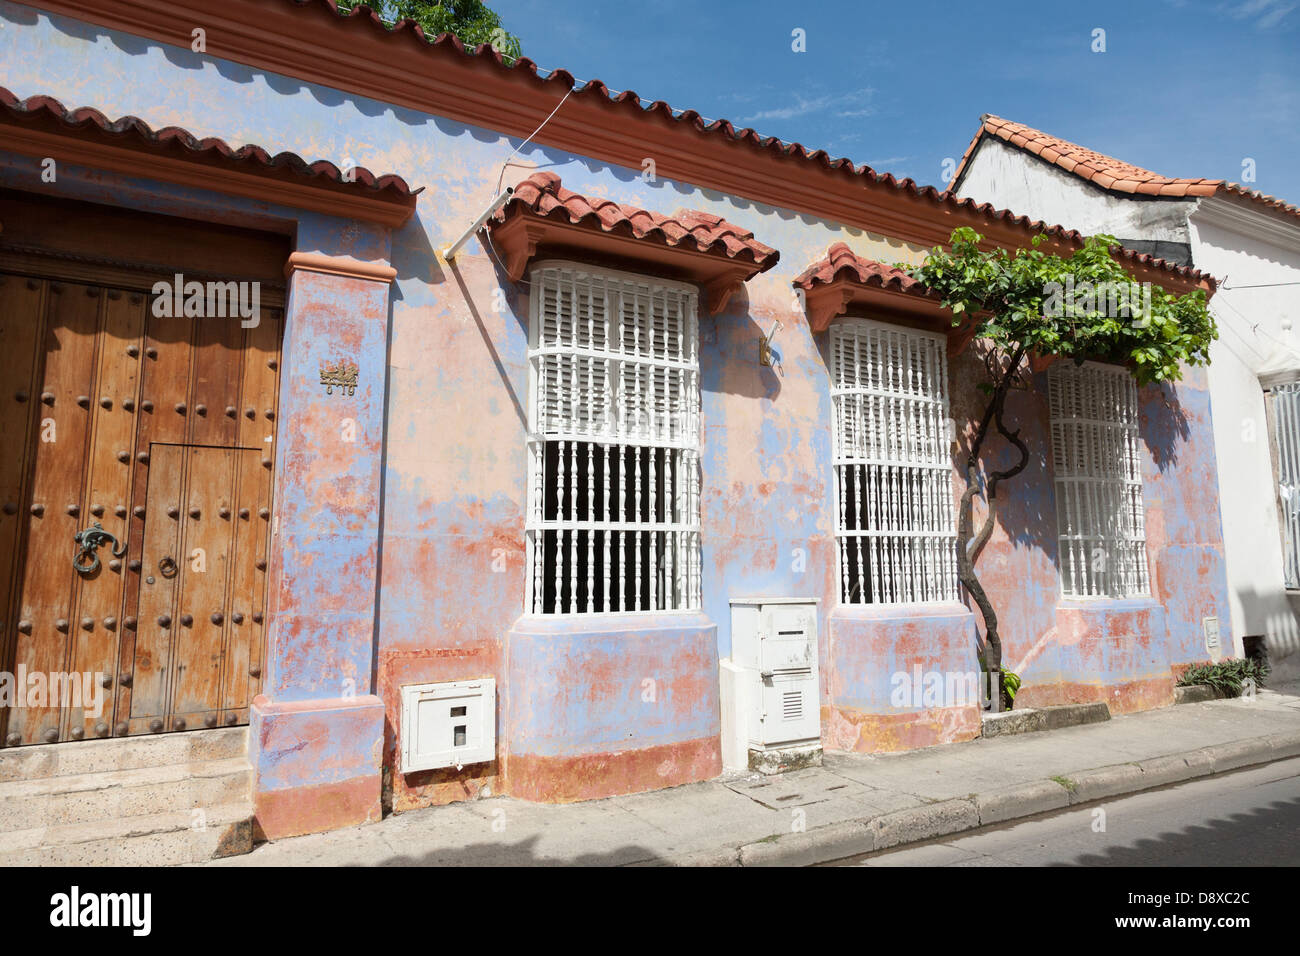 Architettura coloniale ed edifici nel centro storico di Cartagena, Colombia Foto Stock